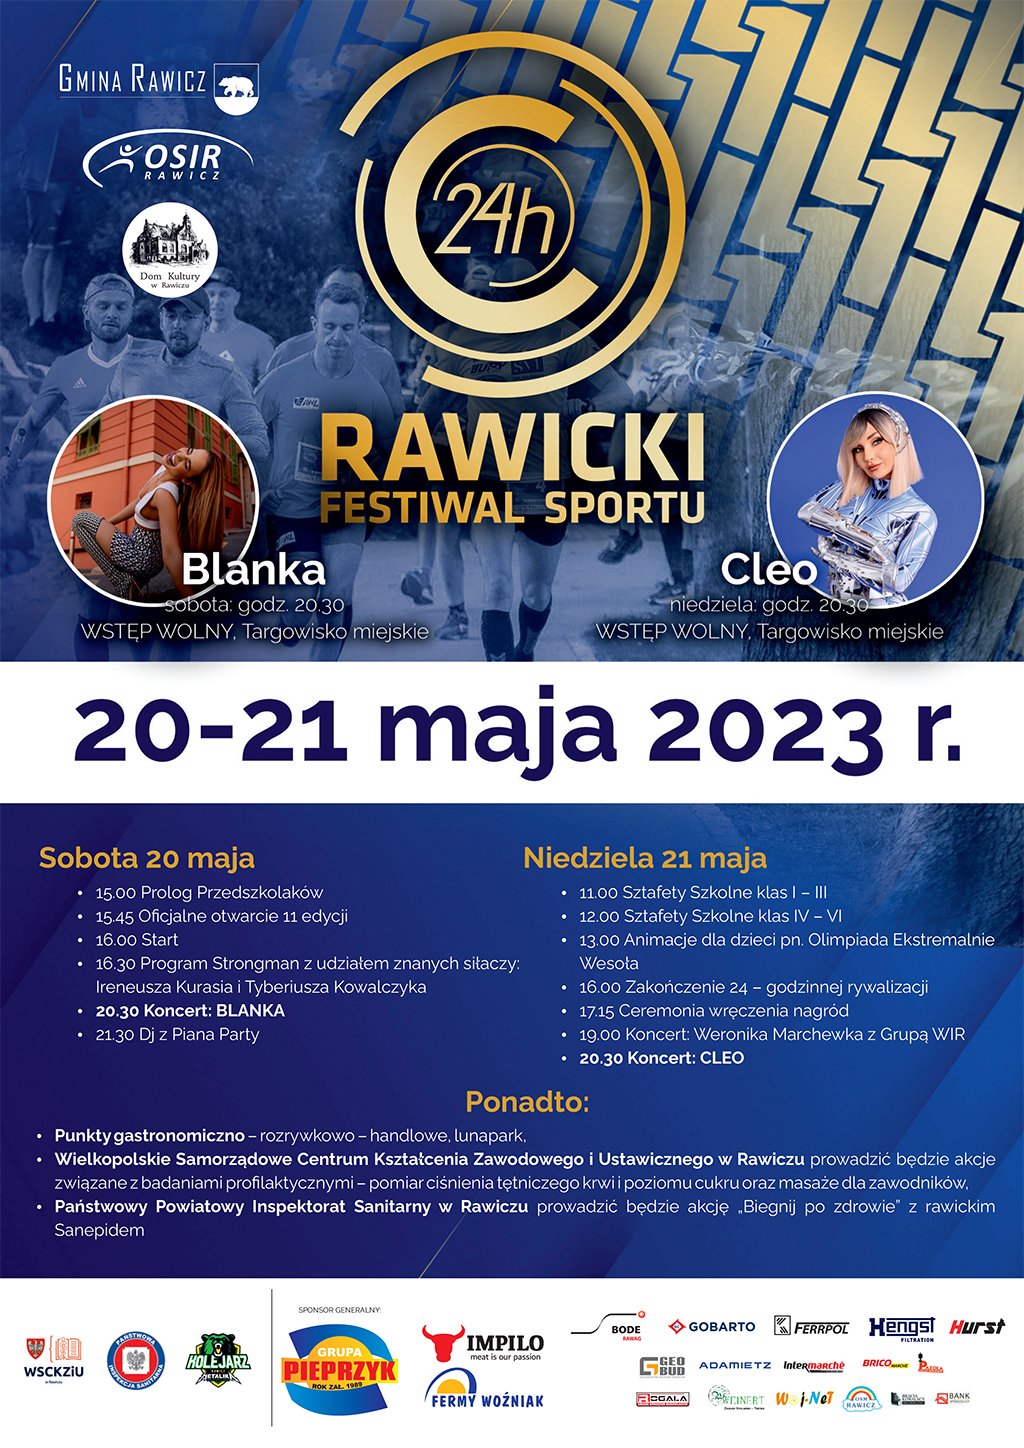 Rawicki Festiwal Sportu 2023